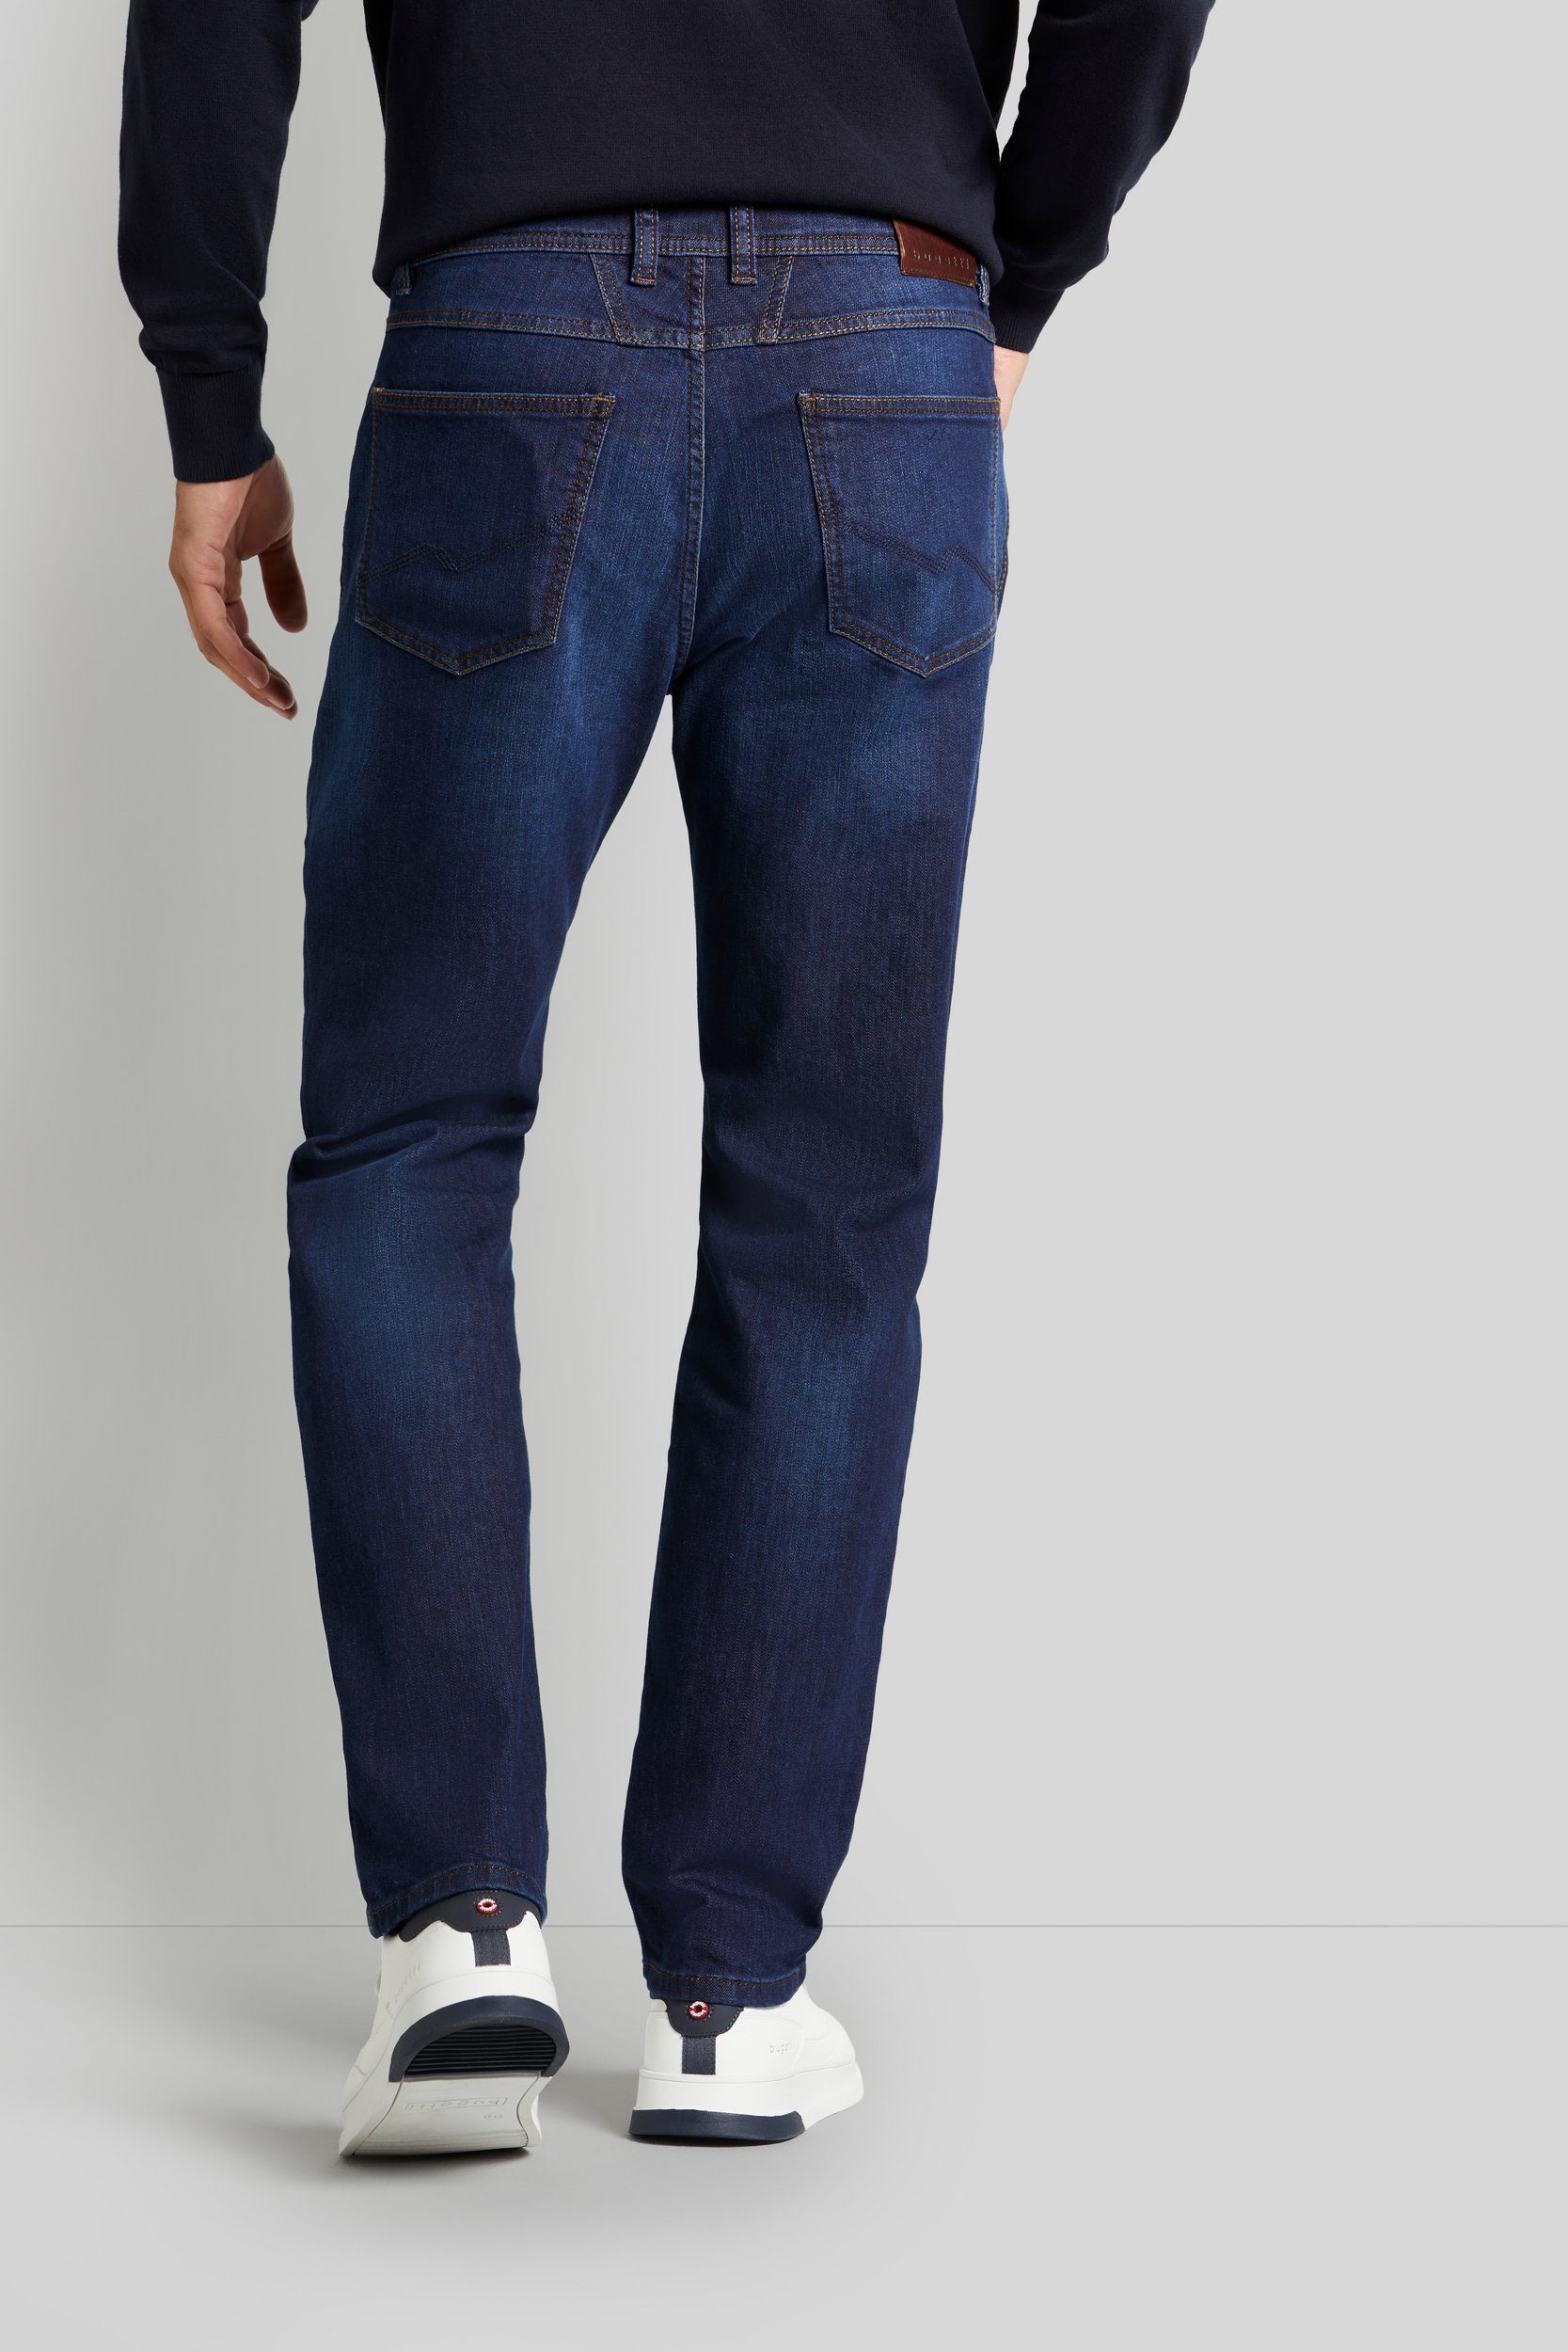 mit Used marine einem leichten Look 5-Pocket-Jeans bugatti